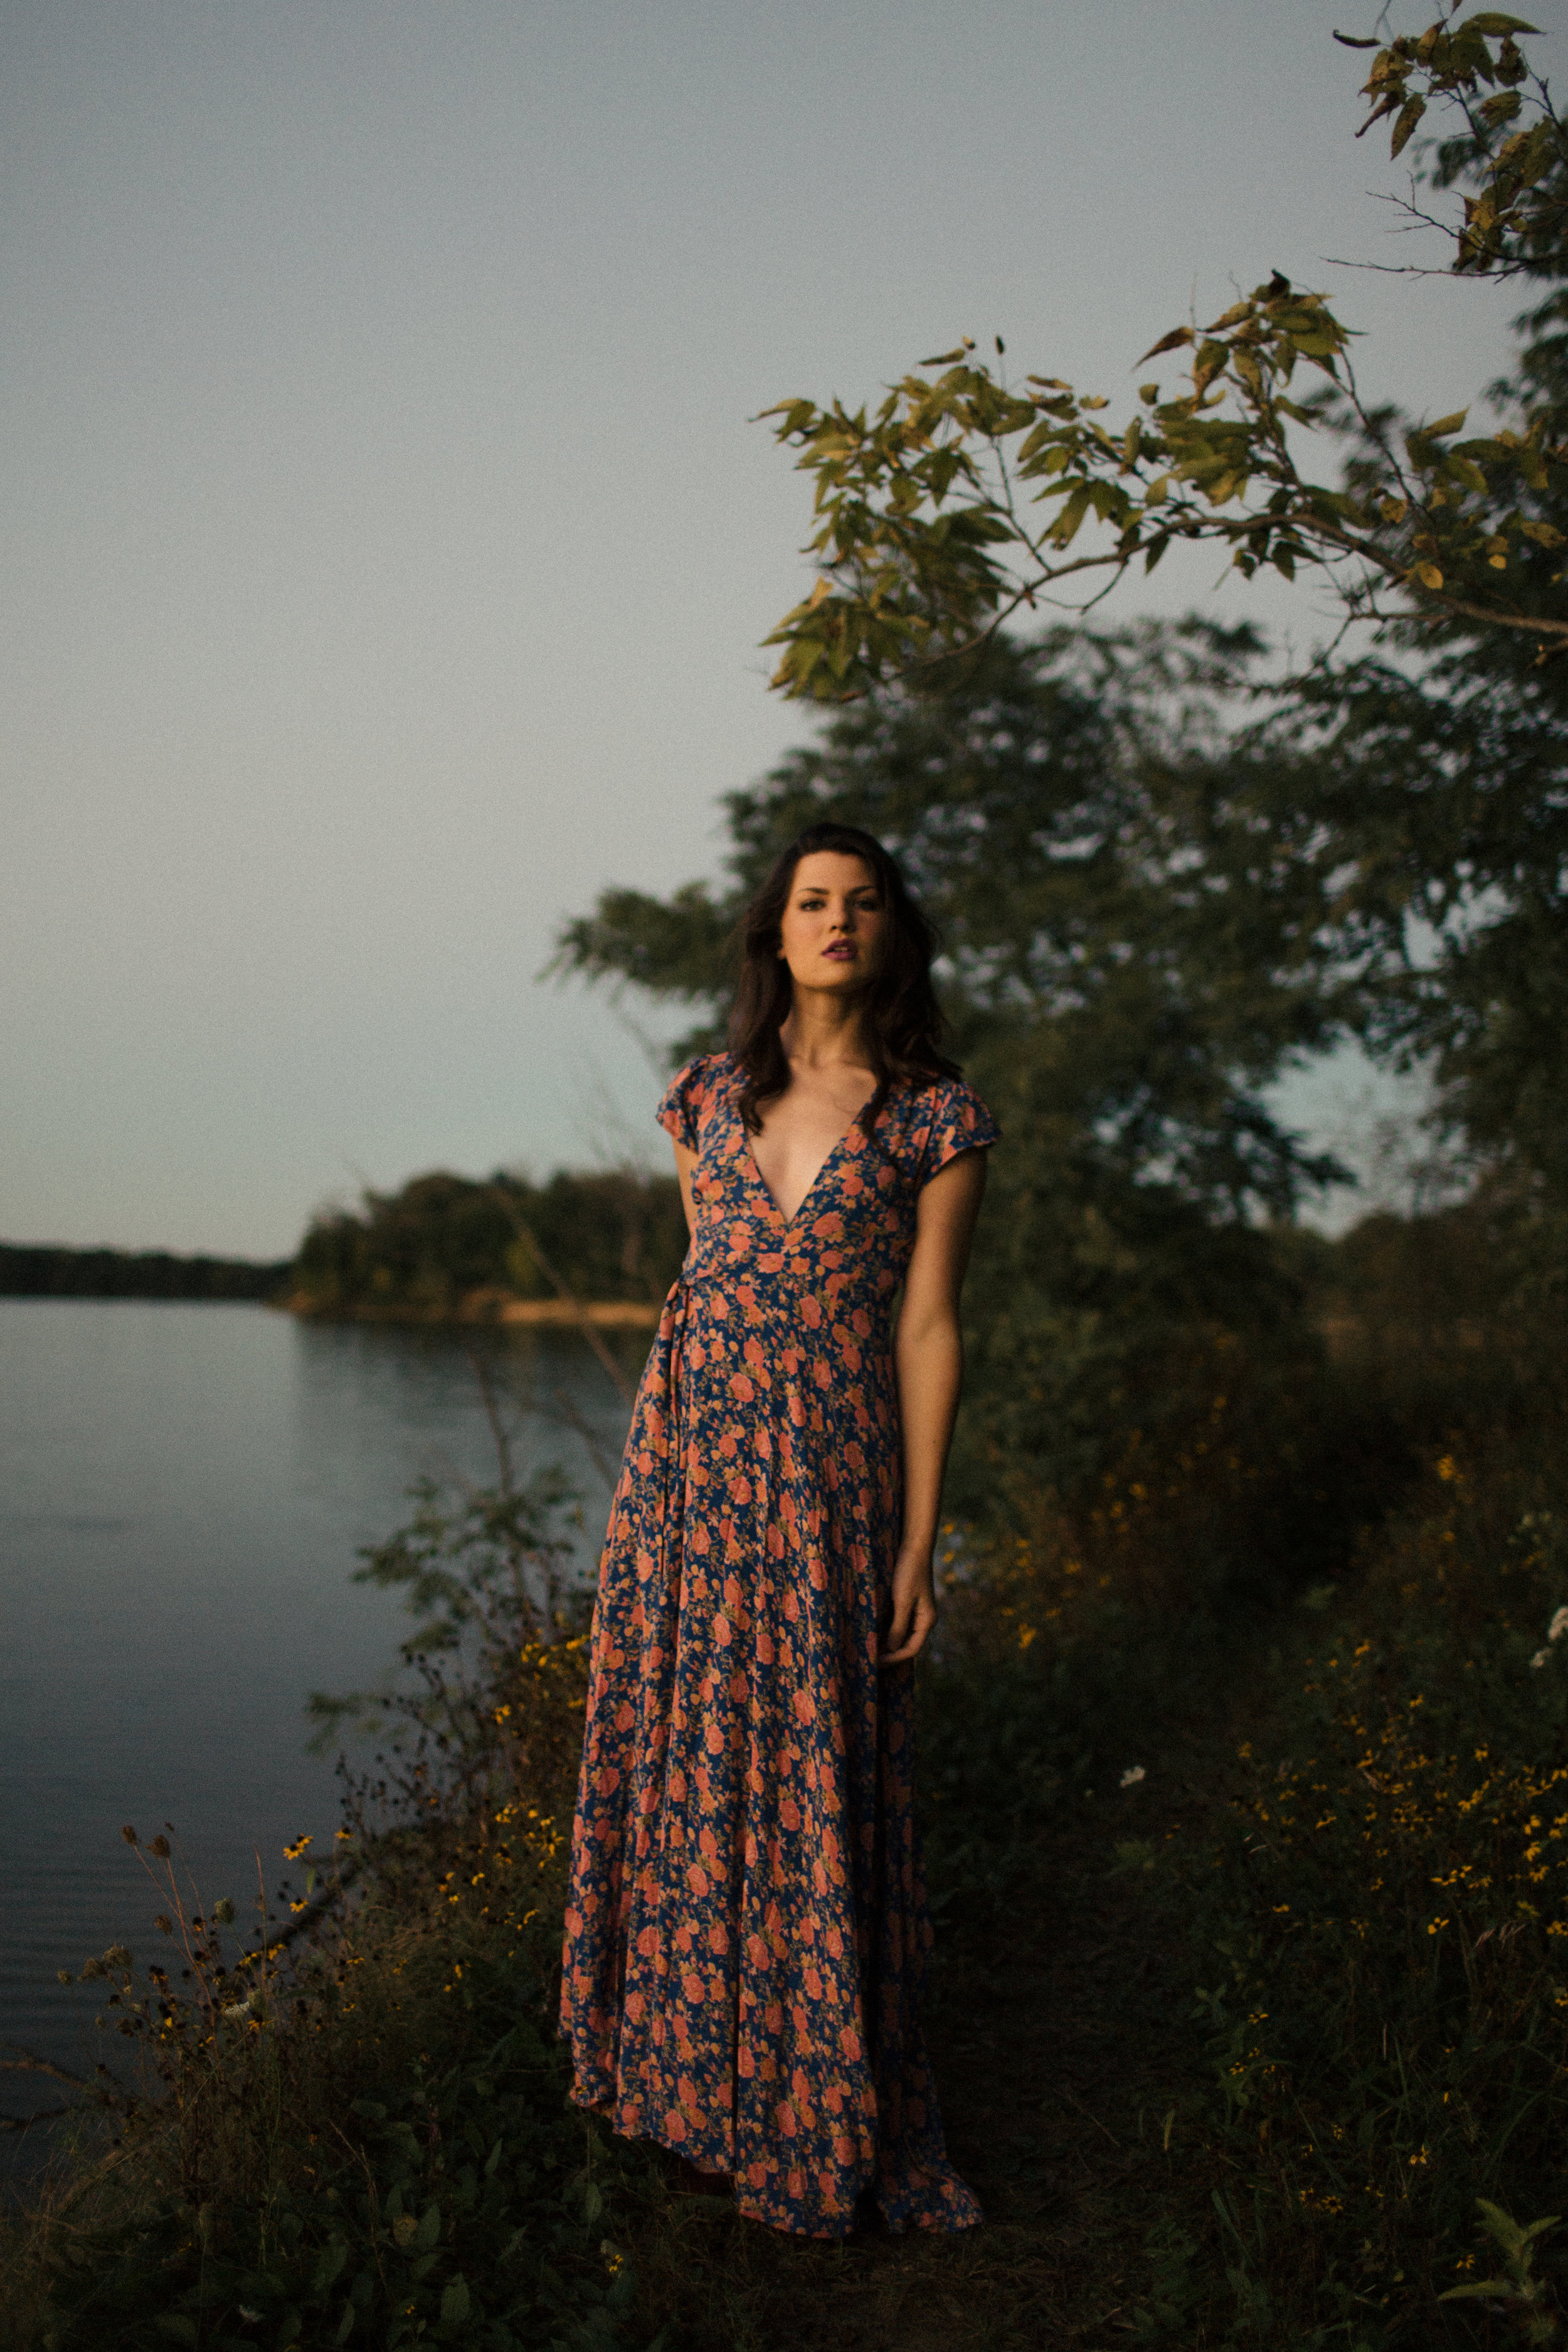 sunset editorial photos floral maxi dress bohemian editorial sarah rose photography ohio